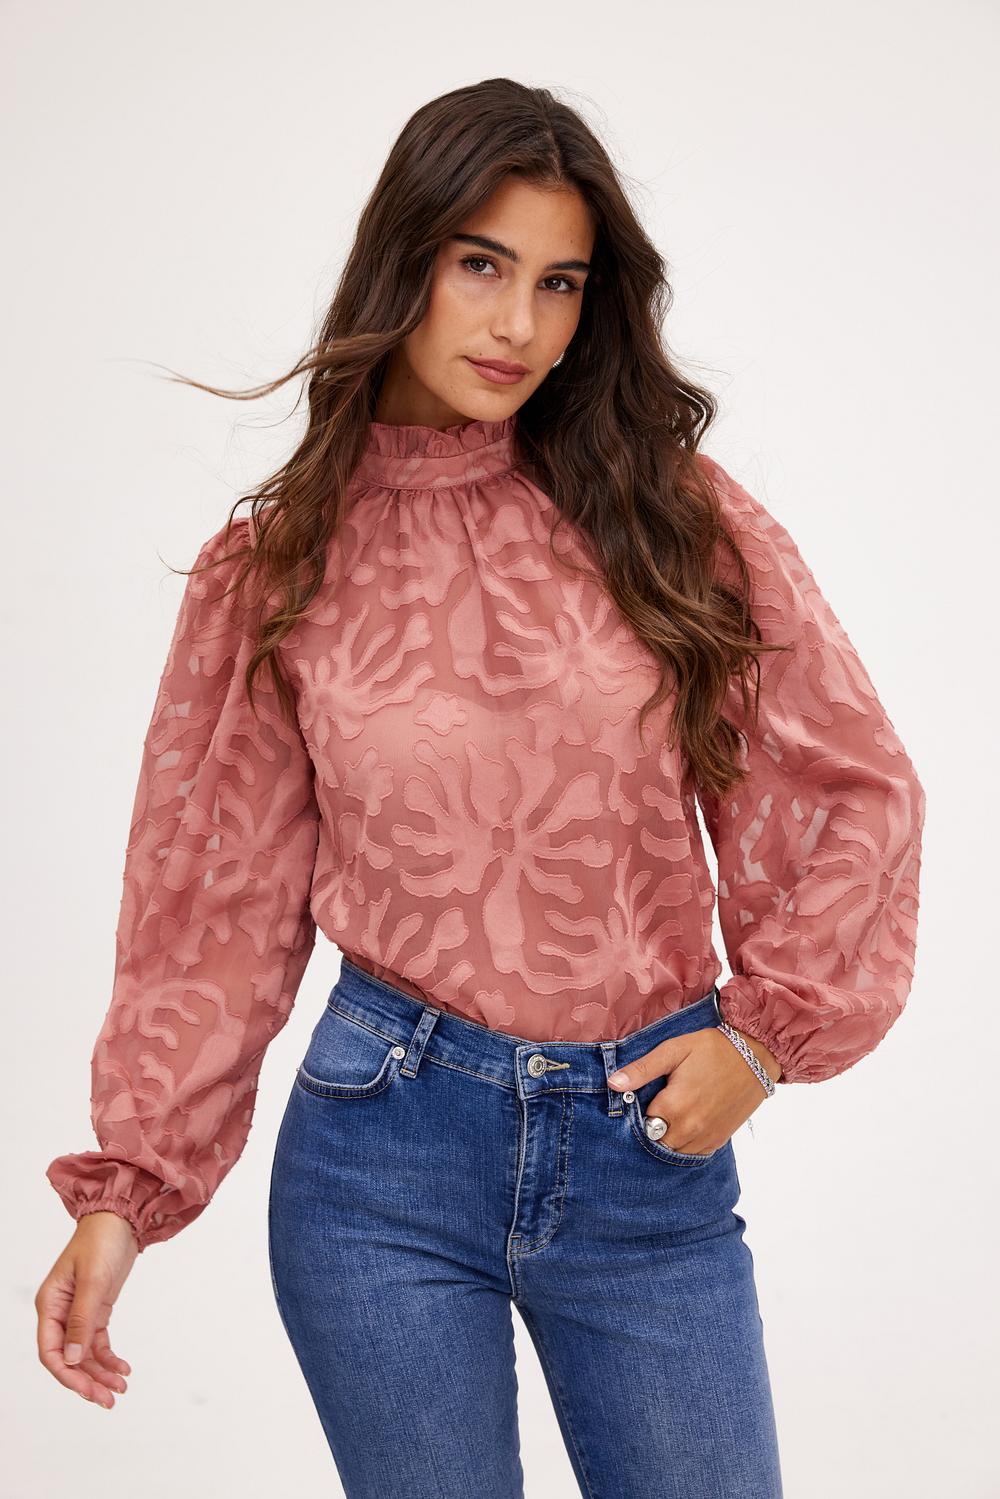 Mauve blouse